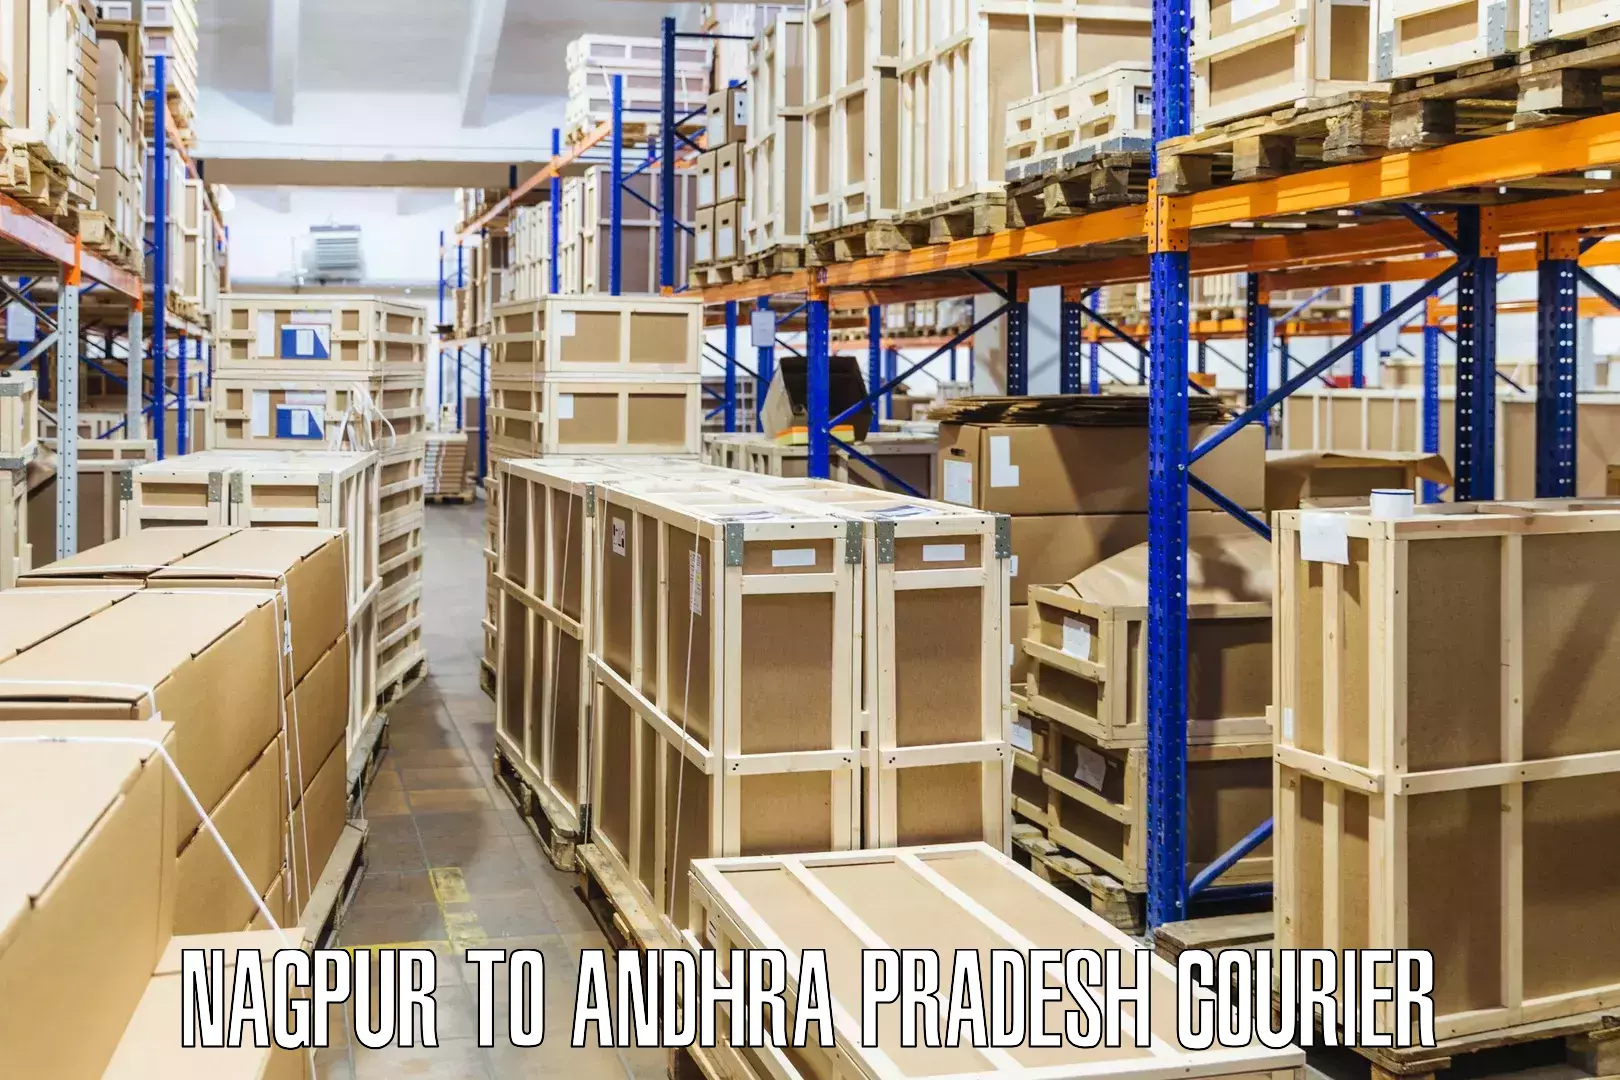 Digital shipping tools Nagpur to Andhra Pradesh